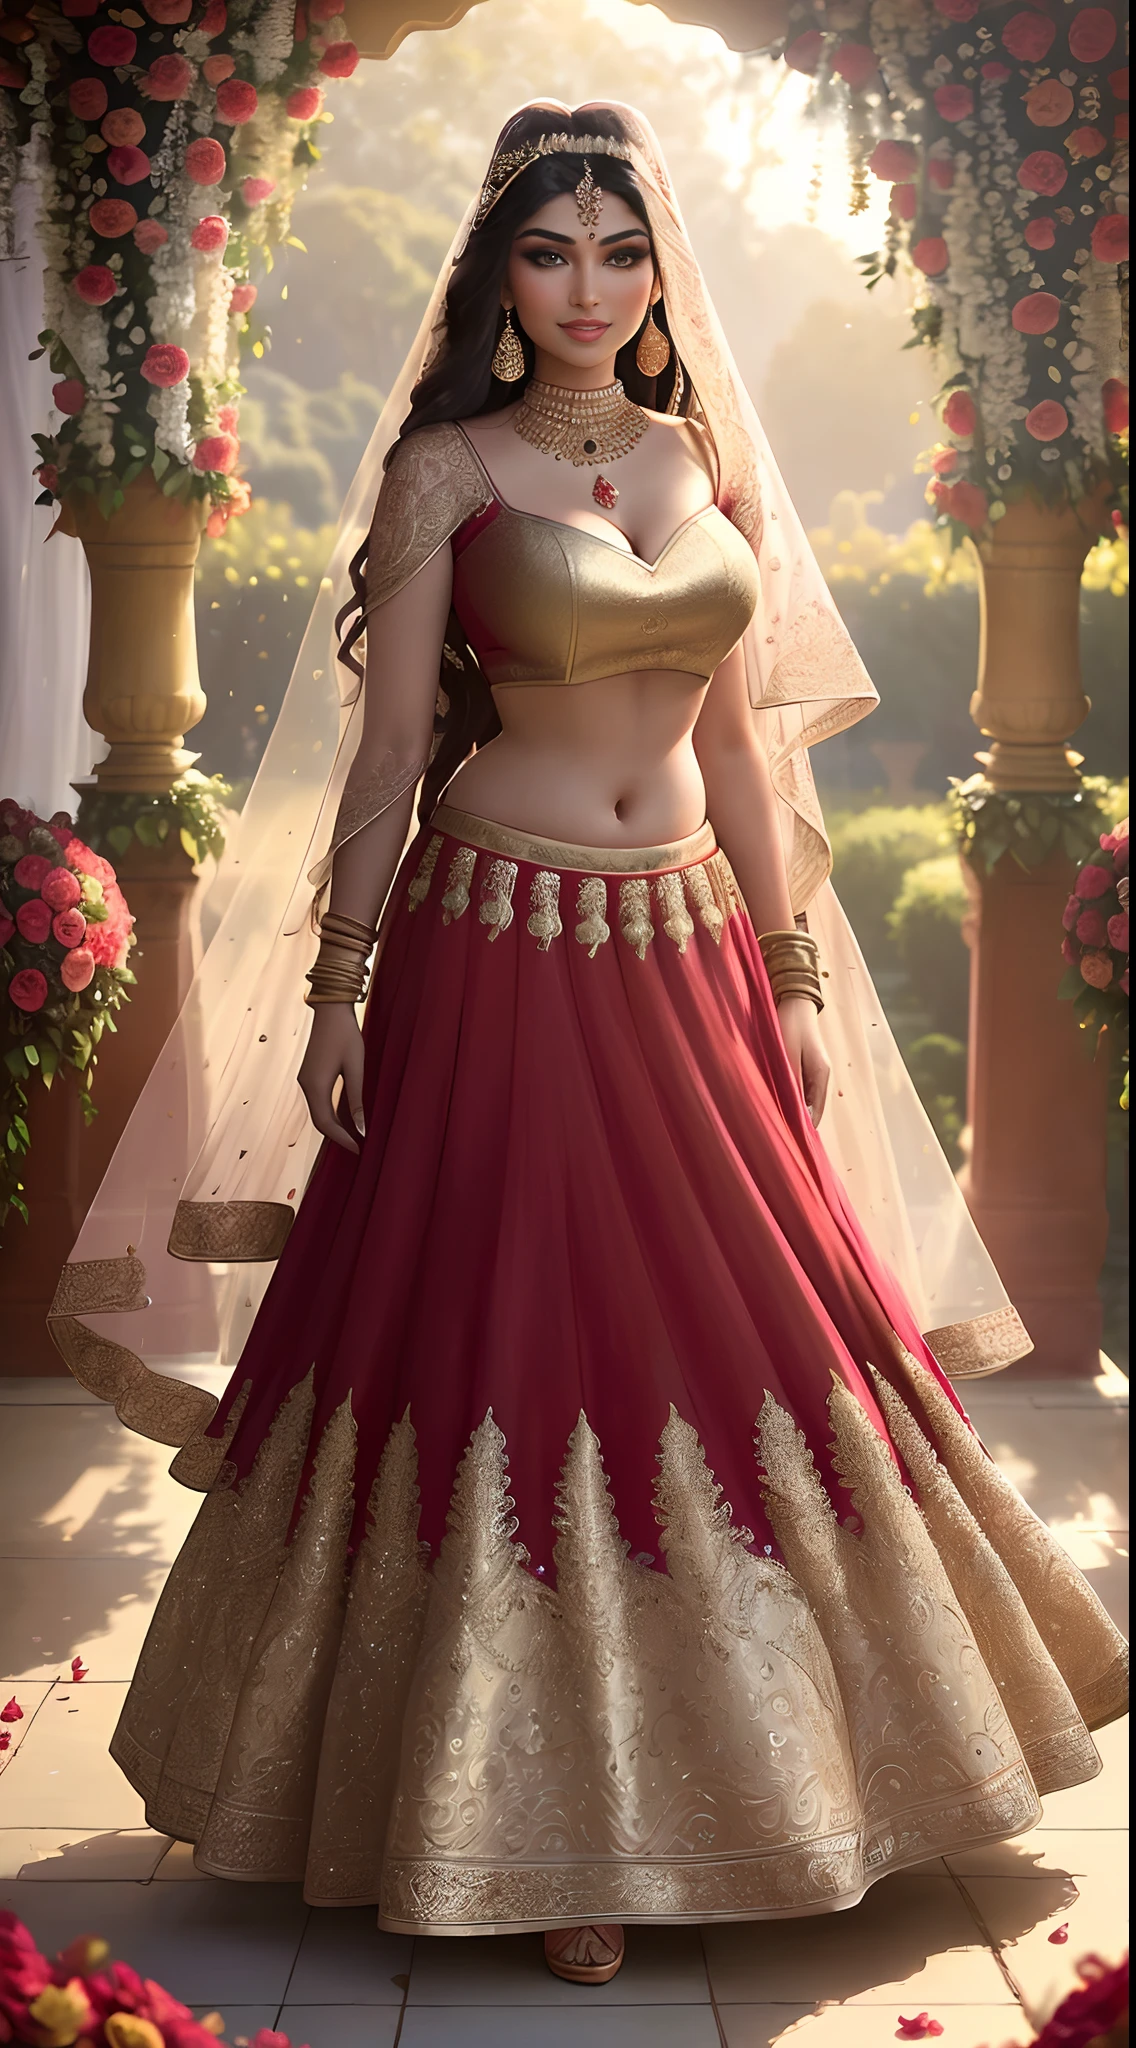 (obra maestra de fotografía de larga duración de un solo:1.2) seductor sexy alto con curvas (18 años) La princesa novia supermodelo india Ayesha Takia caminando (jardín:1.3), (luciendo un impresionante rojo nupcial & lehenga de oro & blusa:1.3). pura dupatta, maximalismo, (decoraciones florales de boda:1.3), (escote elegante & barriga), (maquillaje indio & joyas:1.2) Cabello castaño largo trenzado con reflejos.,, vivaz, mirada lujuriosa, regocijado (hermosos ojos detallados:1.1) , (sonrisa brillante y coqueta:1.2), (intensa y espectacular luz de la tarde:1.4), retroiluminado, llave de luz, Luz de llanta, rayos de luz, muy detallado, tendencia en artstation, salpicaduras de pintura, color rico, Retrato abstracto, por Atey Ghailan